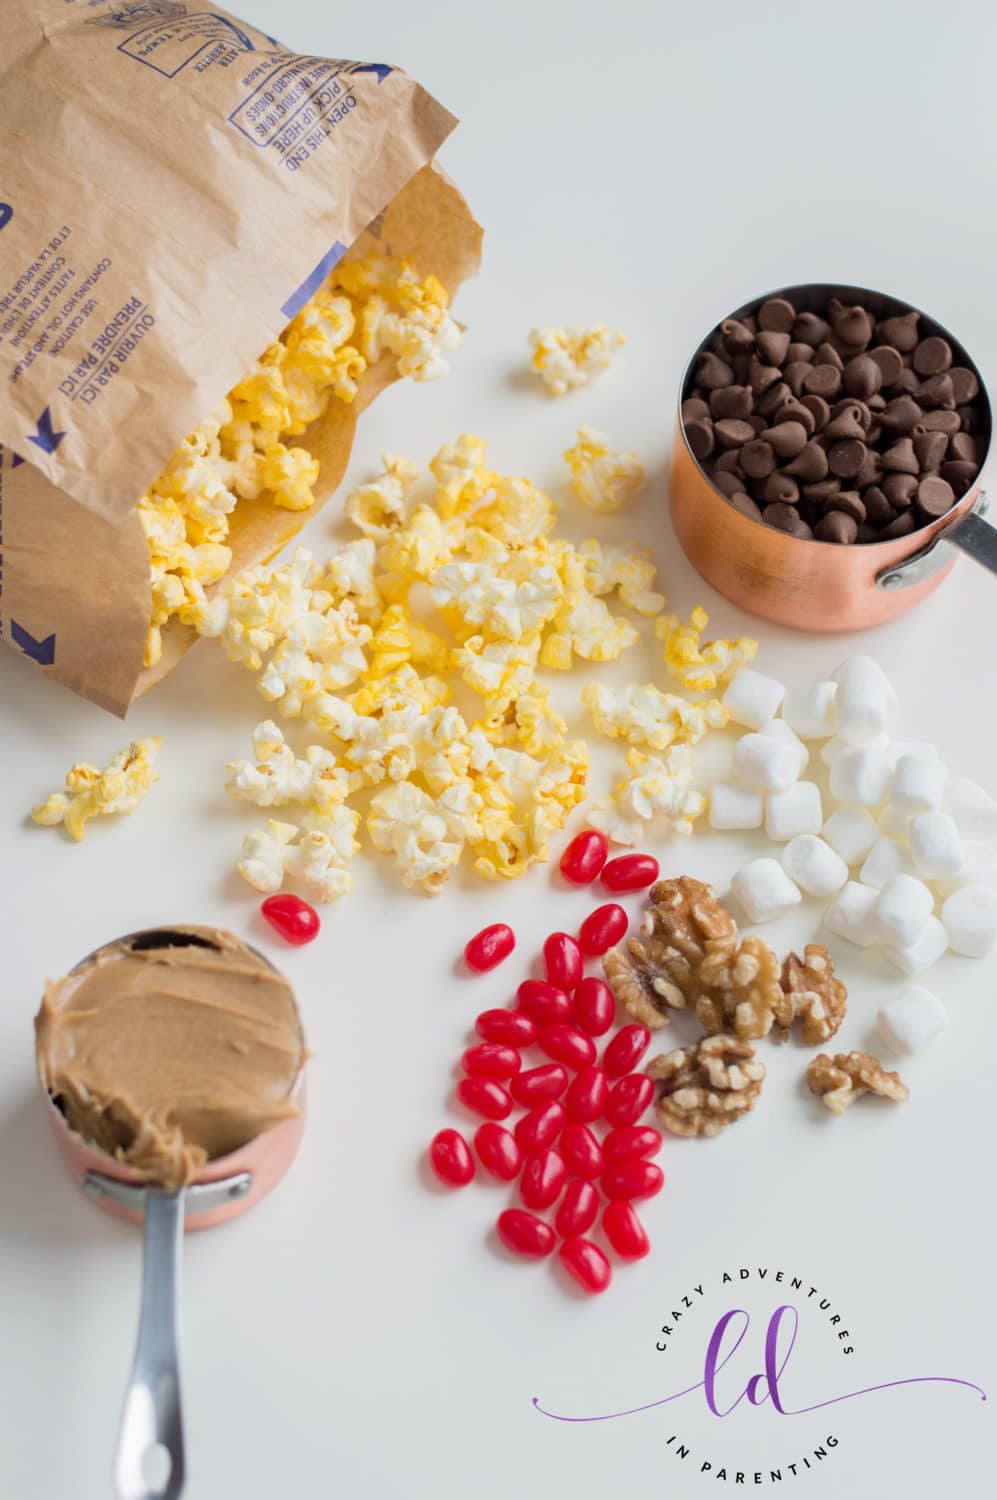 Ingredients to Make Christmas Popcorn